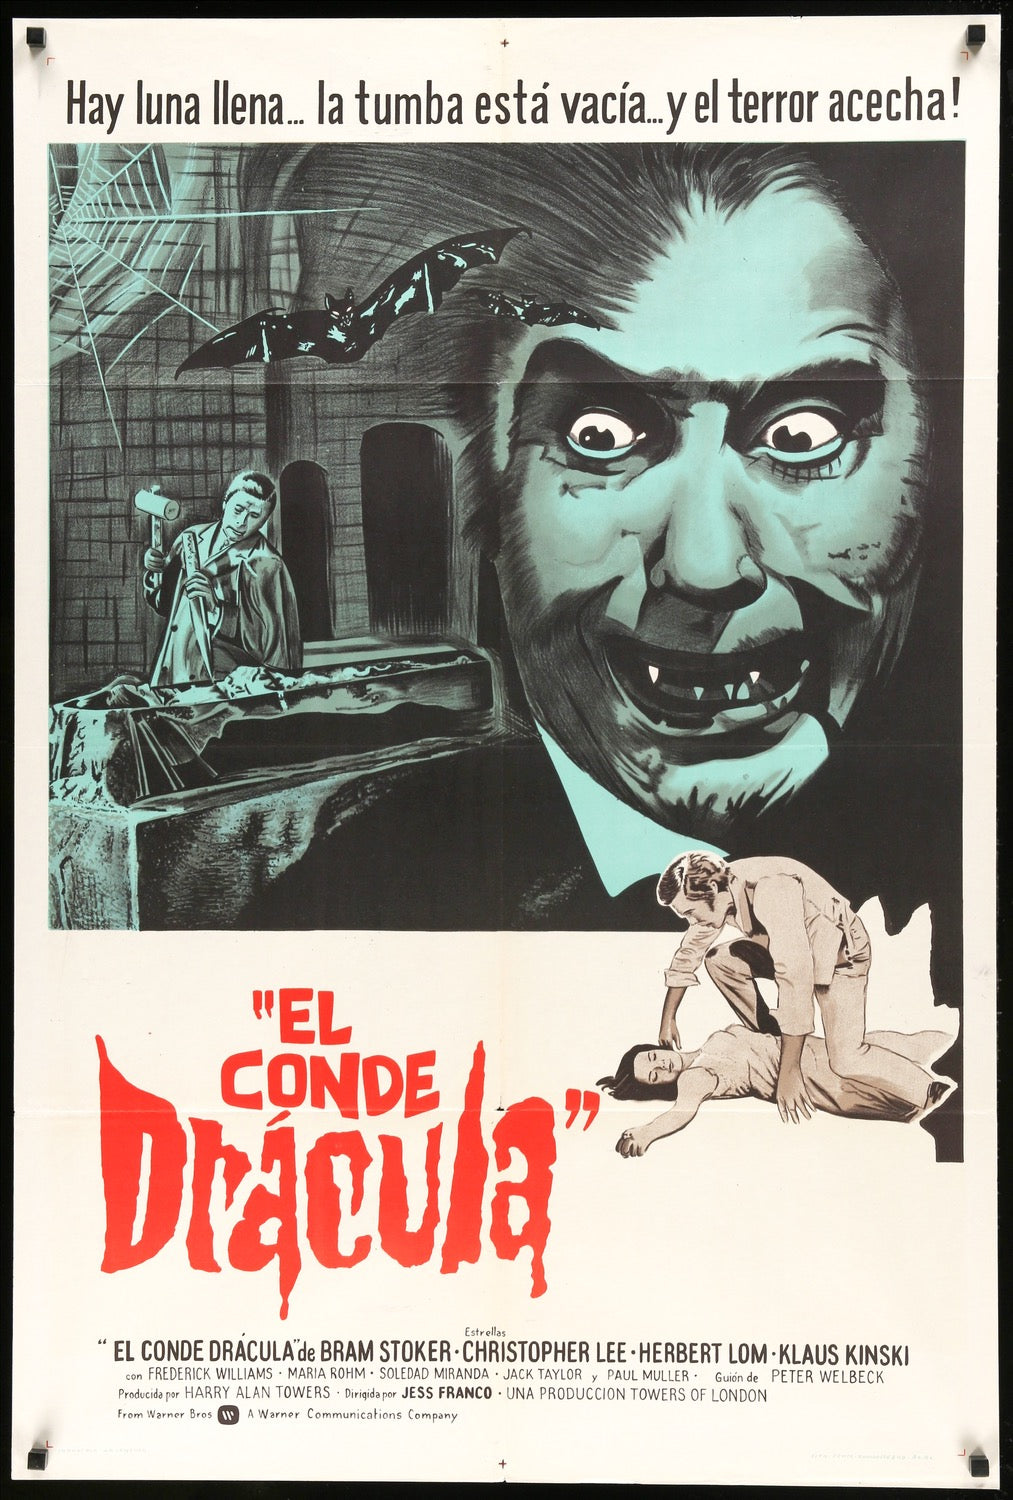 Count Dracula (1970) original movie poster for sale at Original Film Art